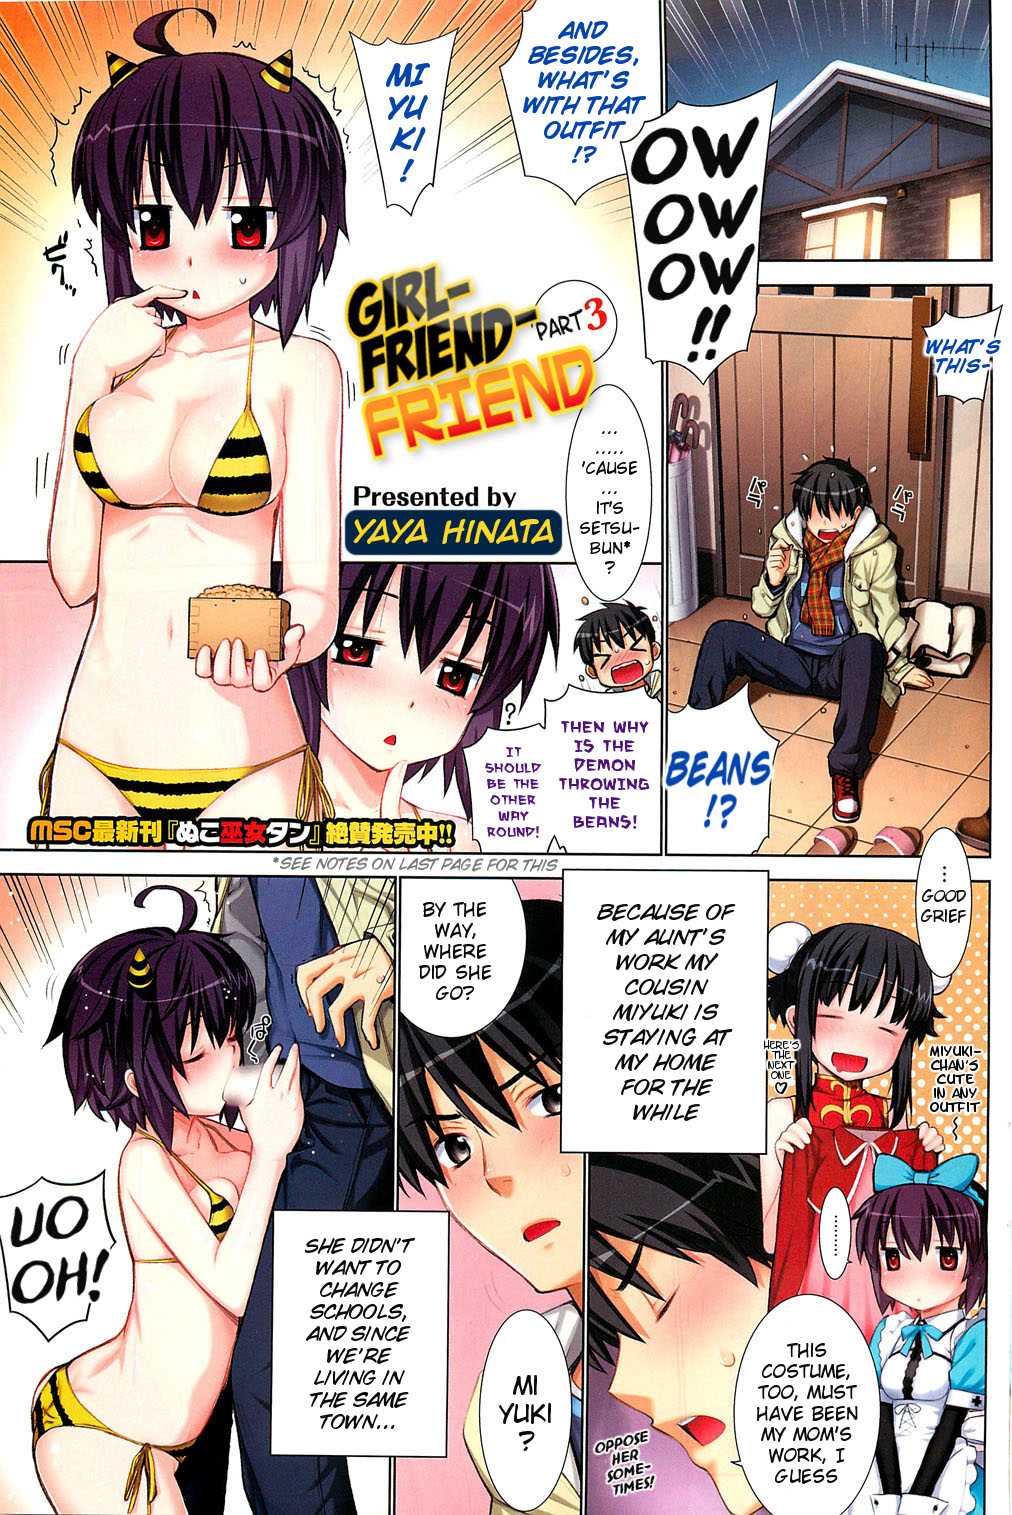 [Yaya Hinata] Girlfriend-Friend (Kanojo Friend) Part 1.5 + 3 [English] (by MumeiTL) 